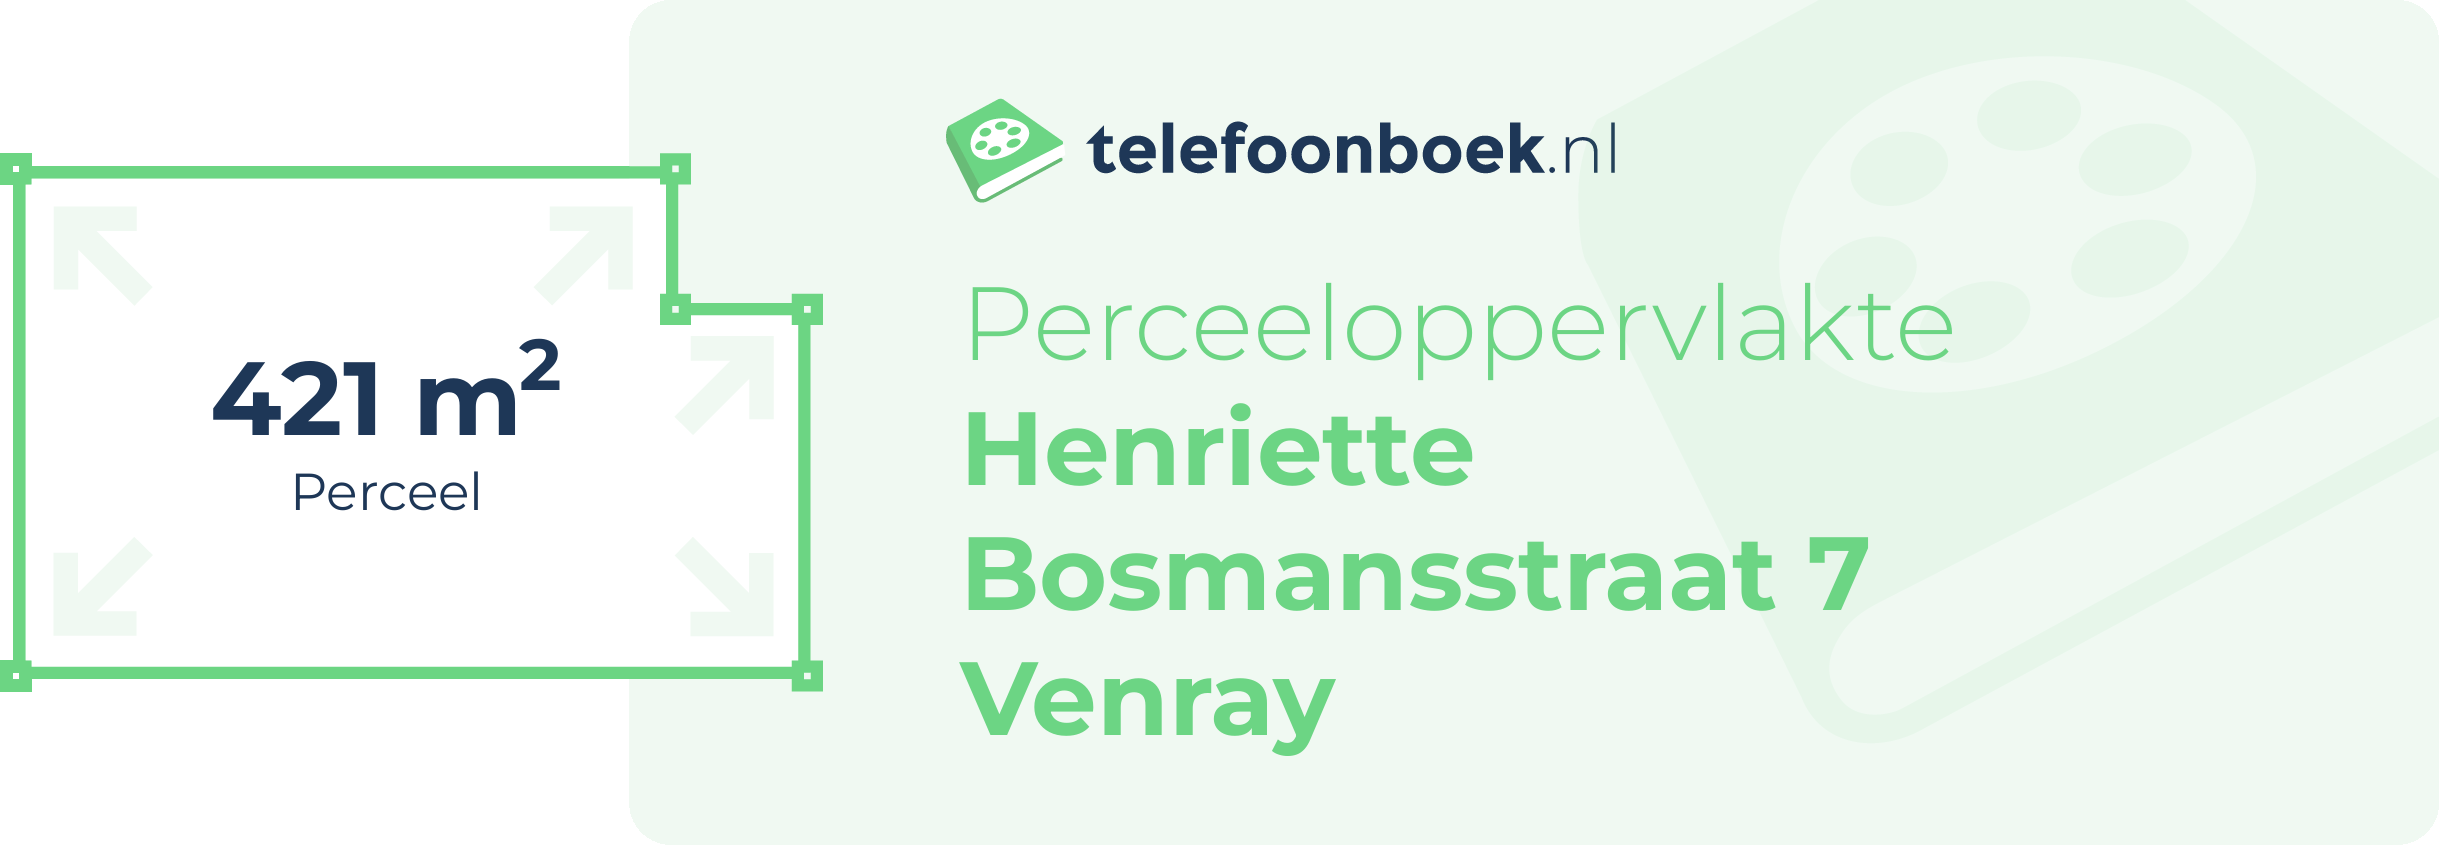 Perceeloppervlakte Henriette Bosmansstraat 7 Venray